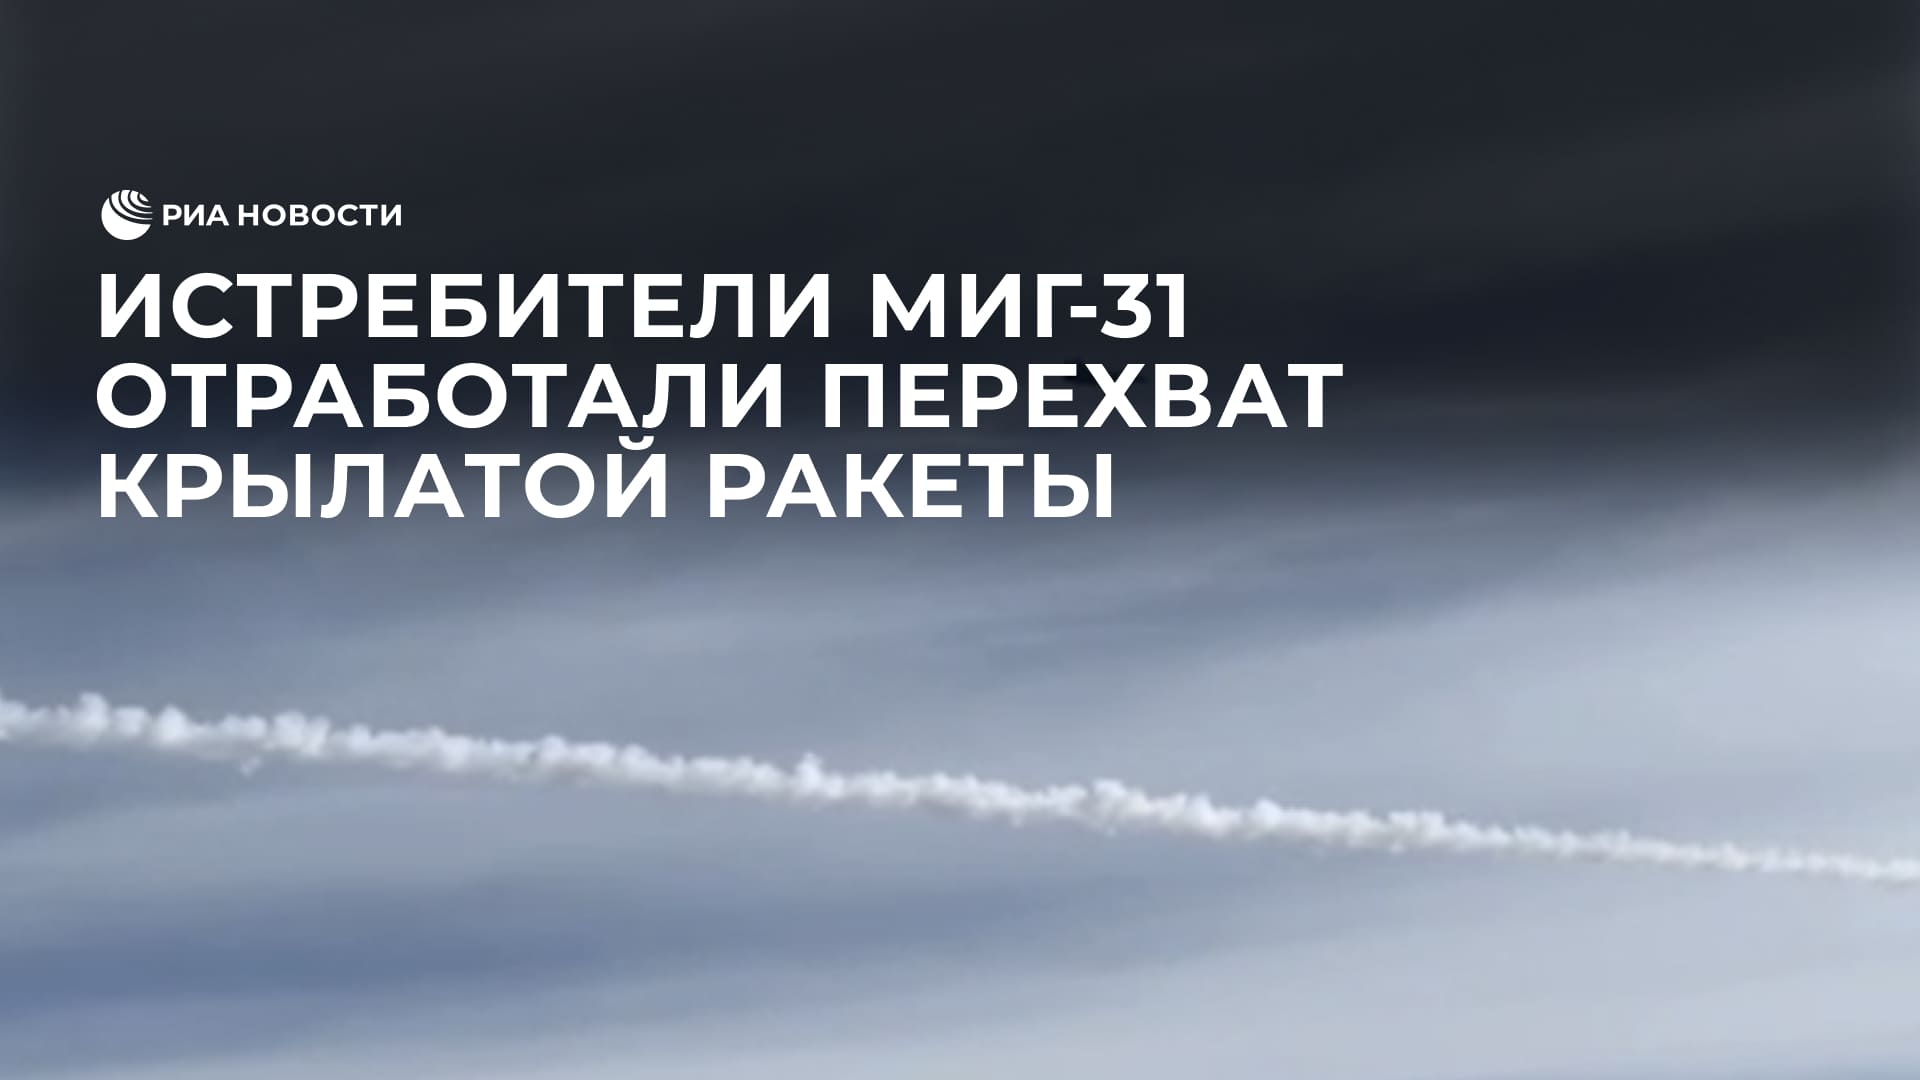 Истребители МиГ-31 отработали перехват крылатой ракеты над Чукоткой